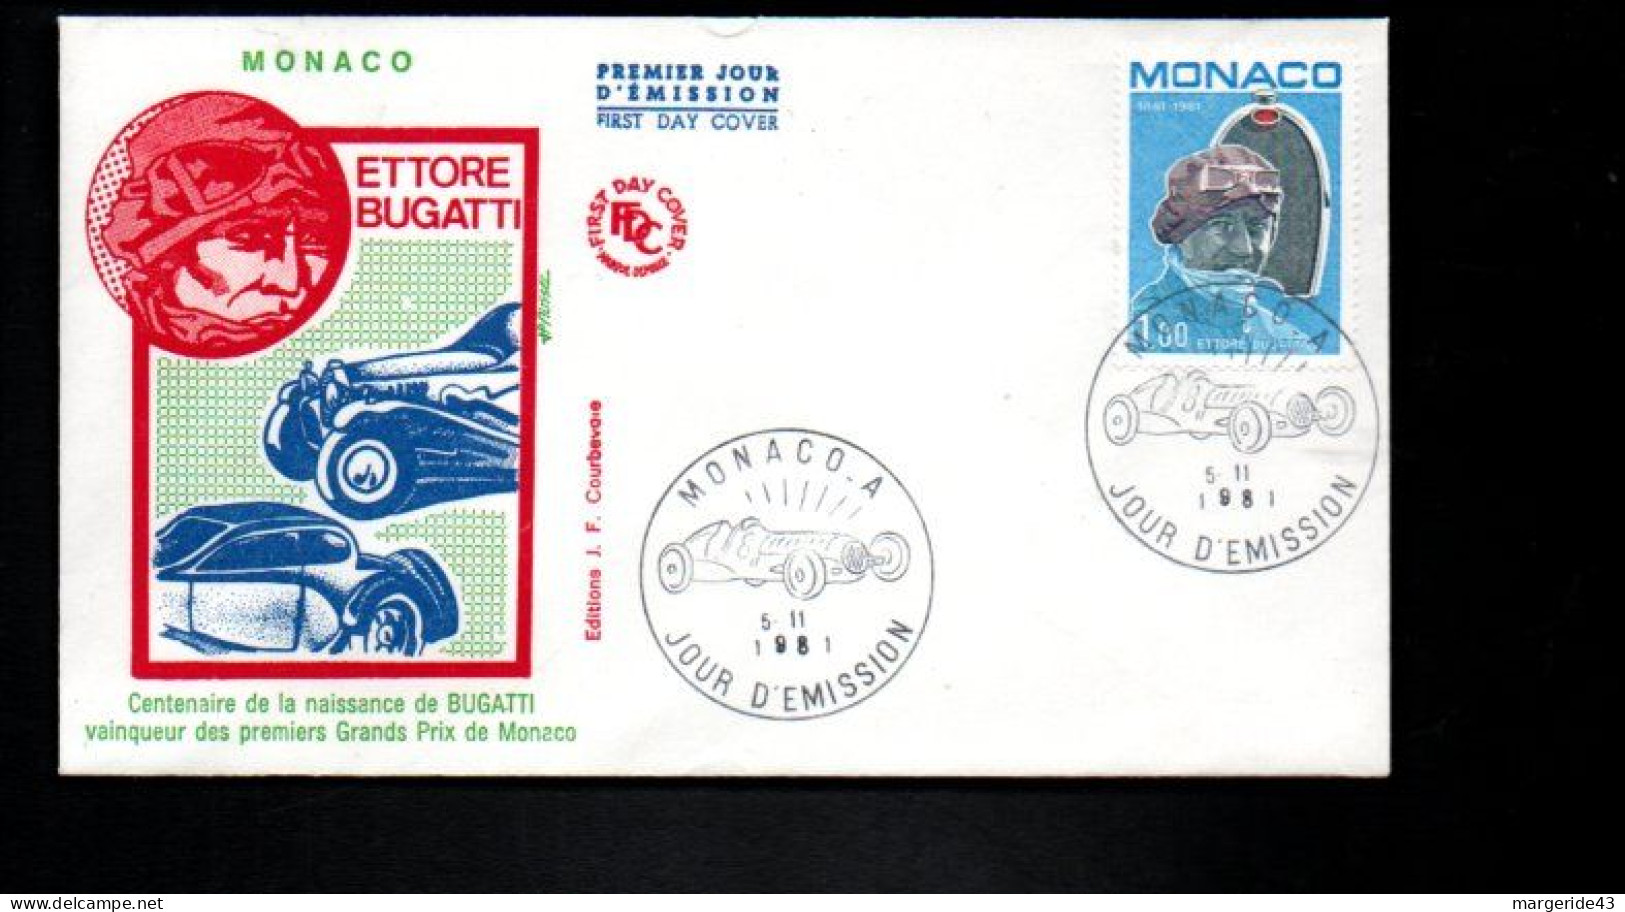 MONACO FDC 191 ETTORE BUGATTI - Cars